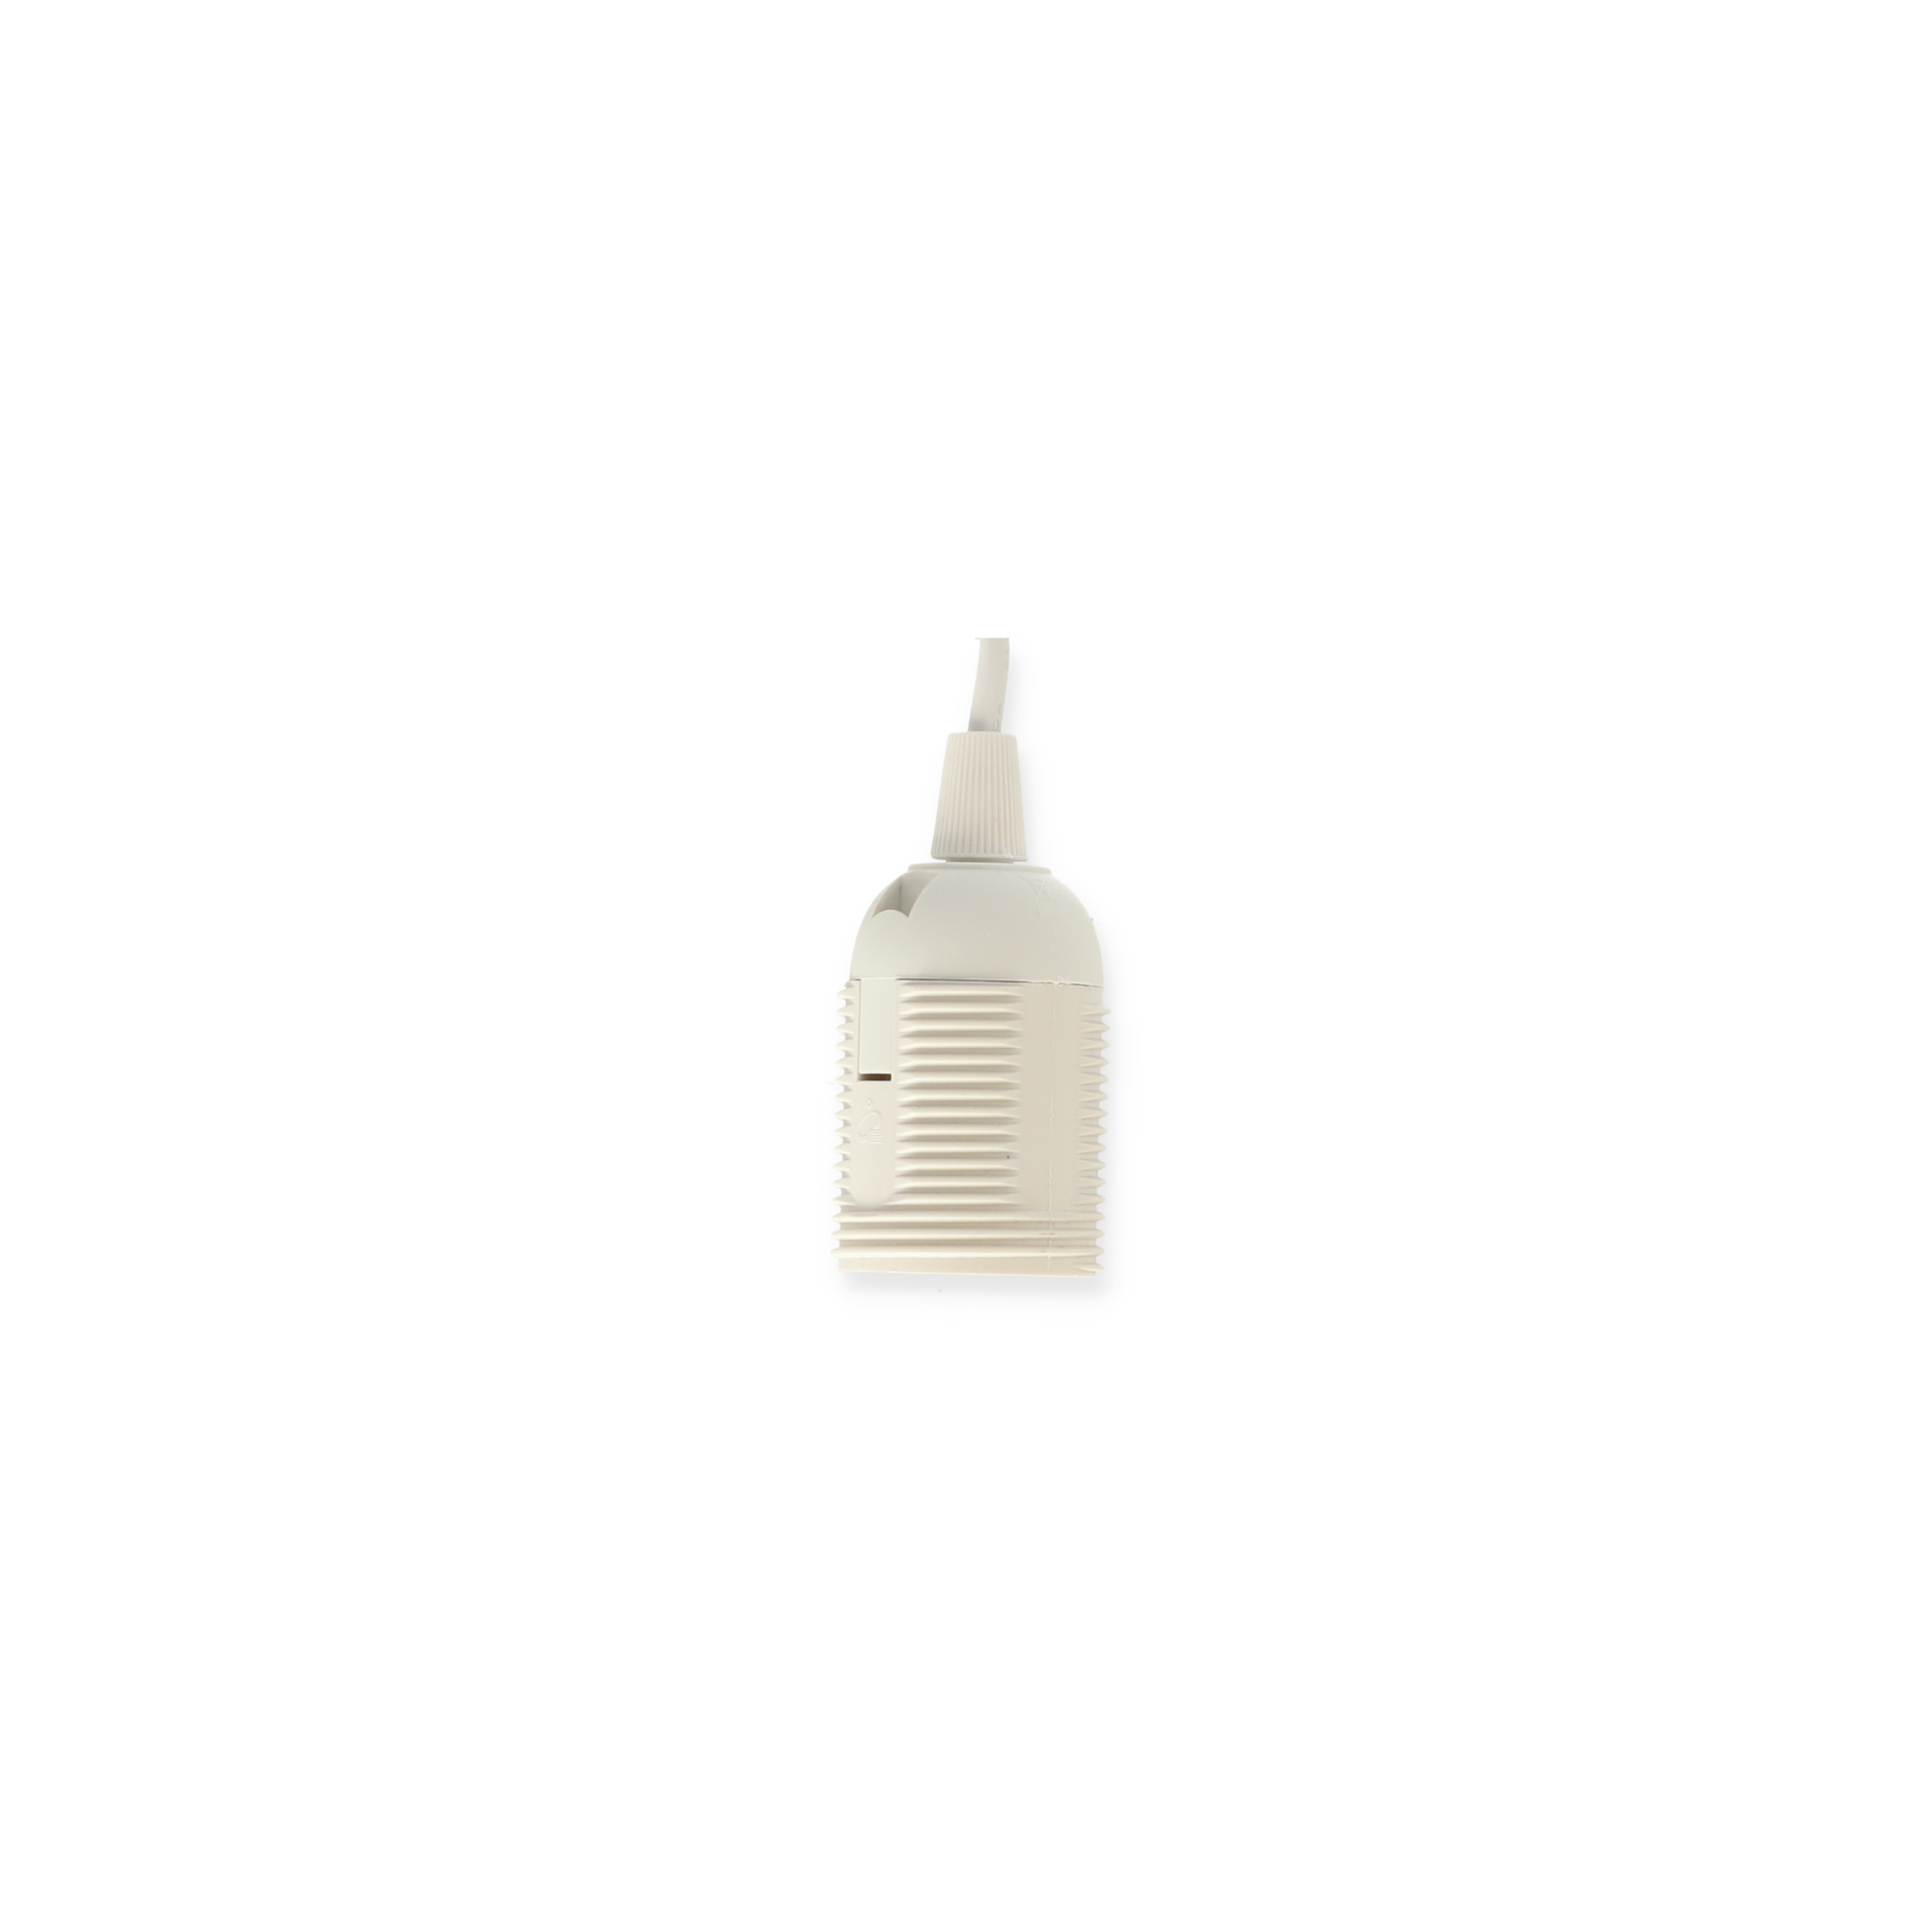 Lampenanschluss mit Schalter weiß E27 3 m + product picture